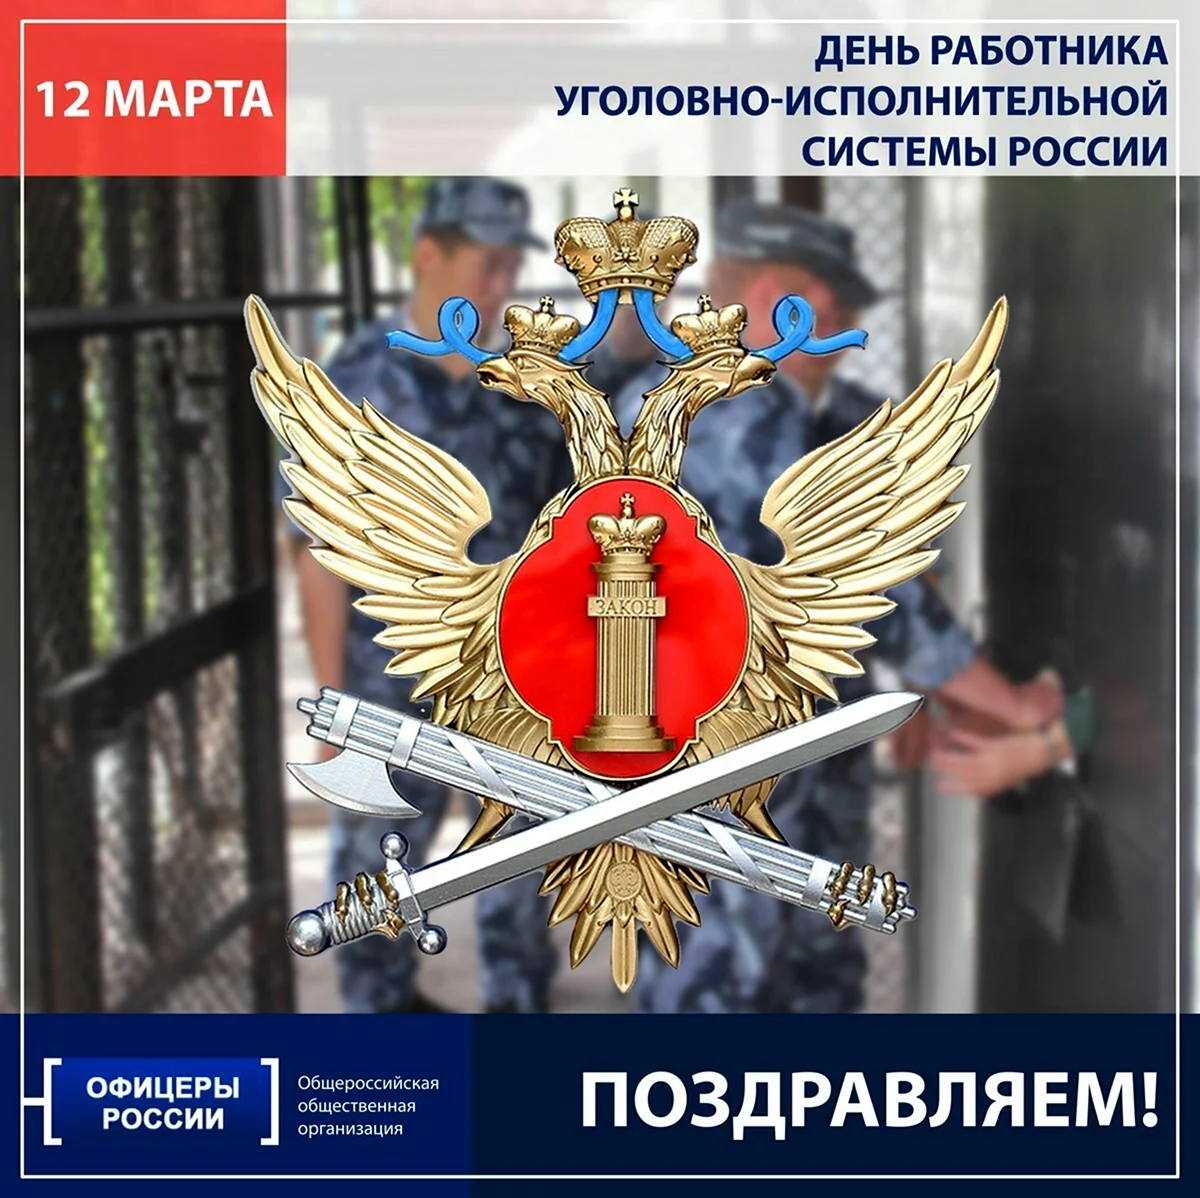 12 Марта день работника уголовно-исполнительной системы России. Поздравление